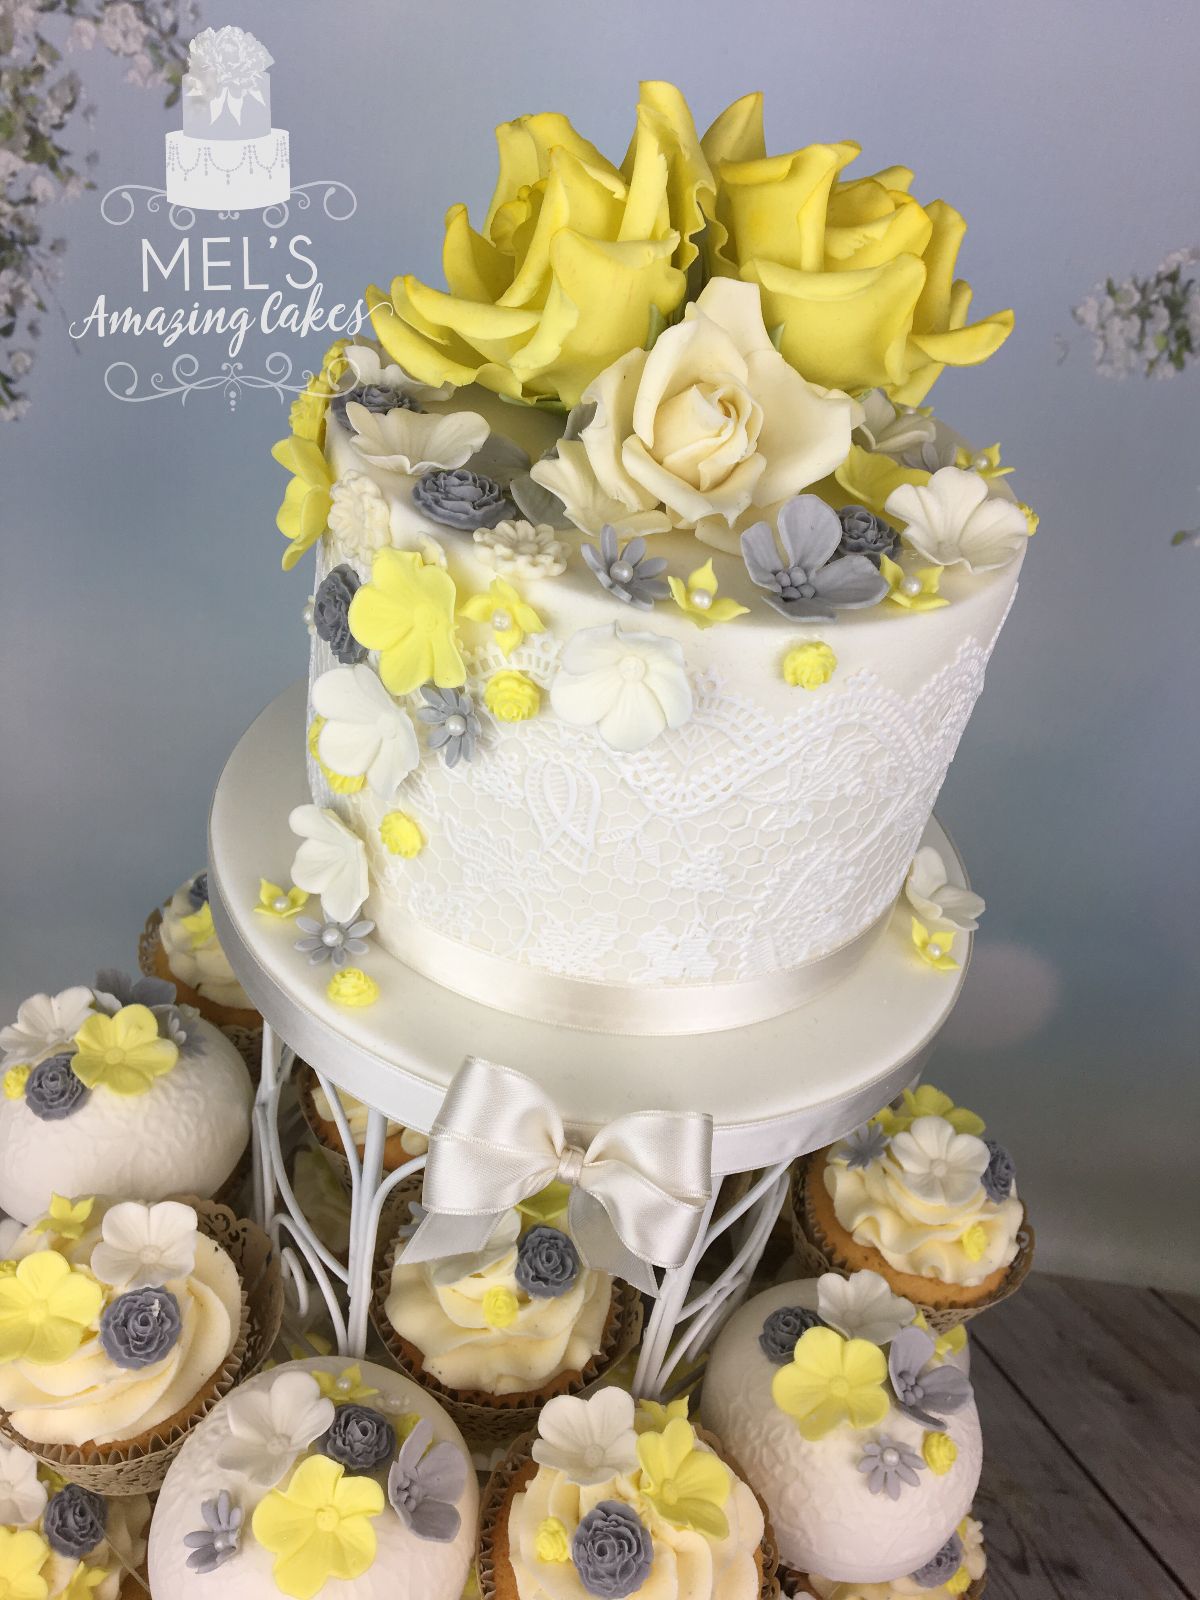 Mel's Amazing Cakes-Image-119